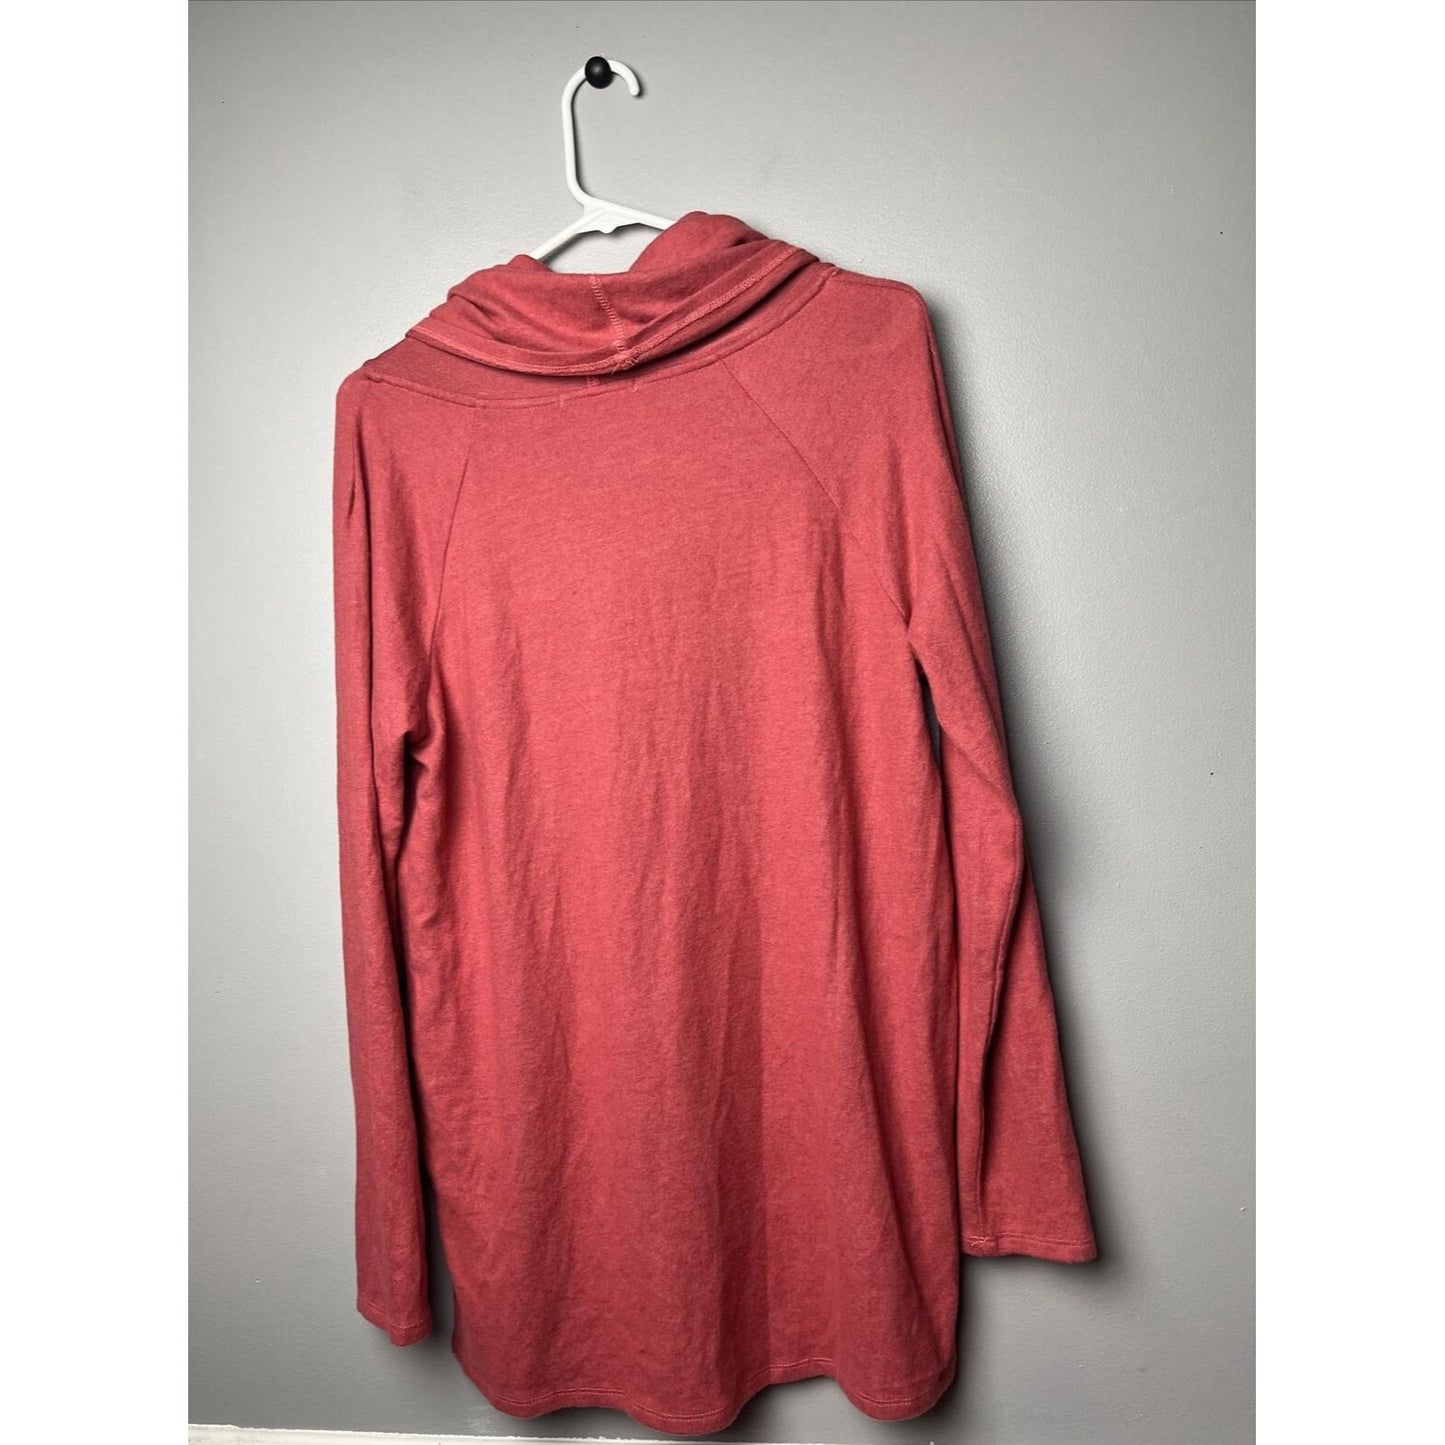 New Gibson Sweatshirt Top Womens Medium Cozy Fleece Convertible Neck Marsala Red